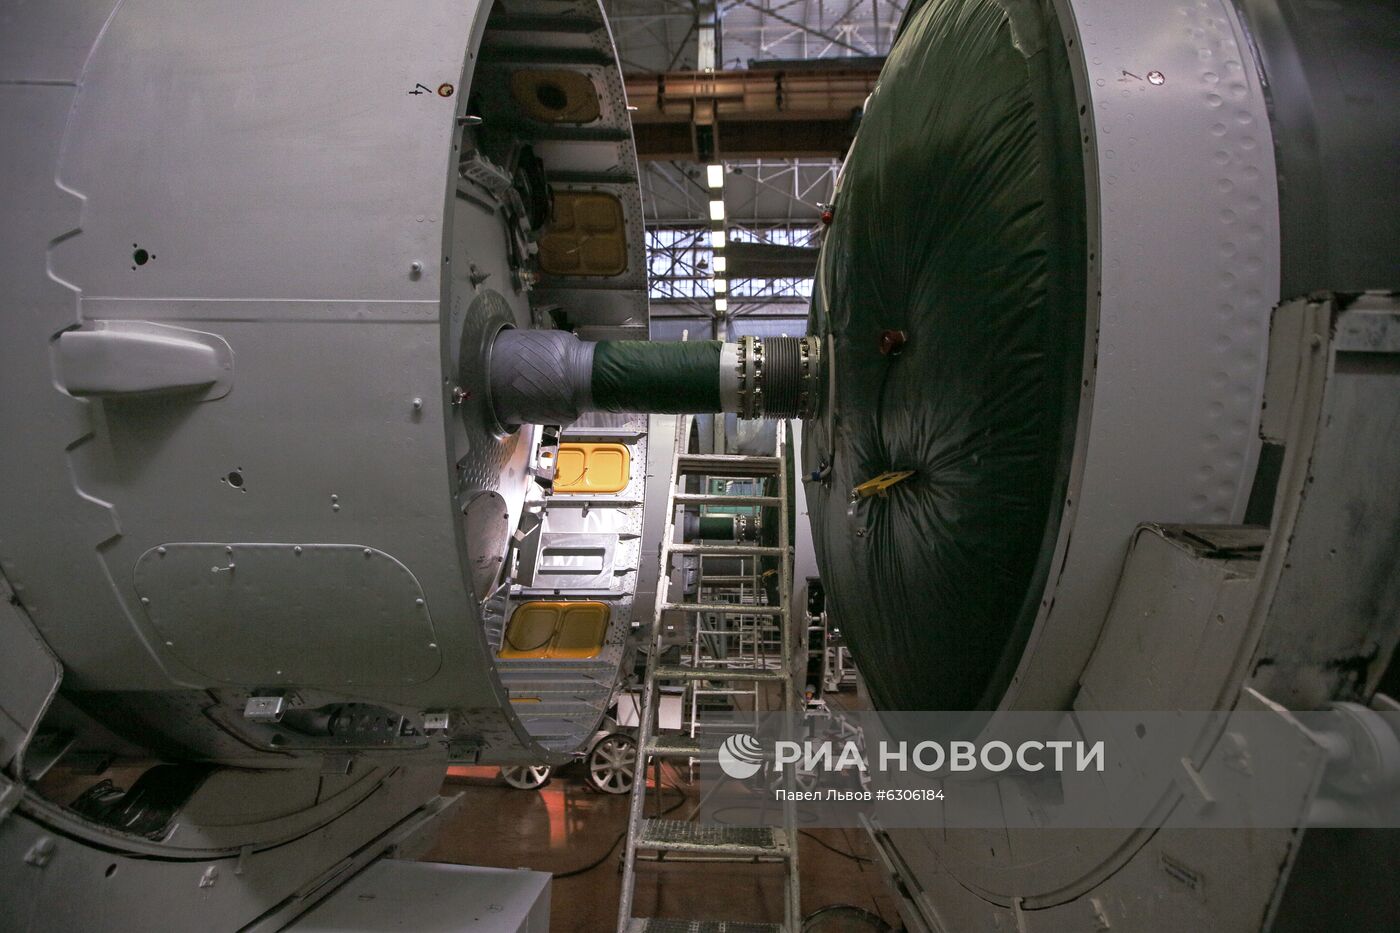 Ракетно-космический центр "Прогресс" в Самаре